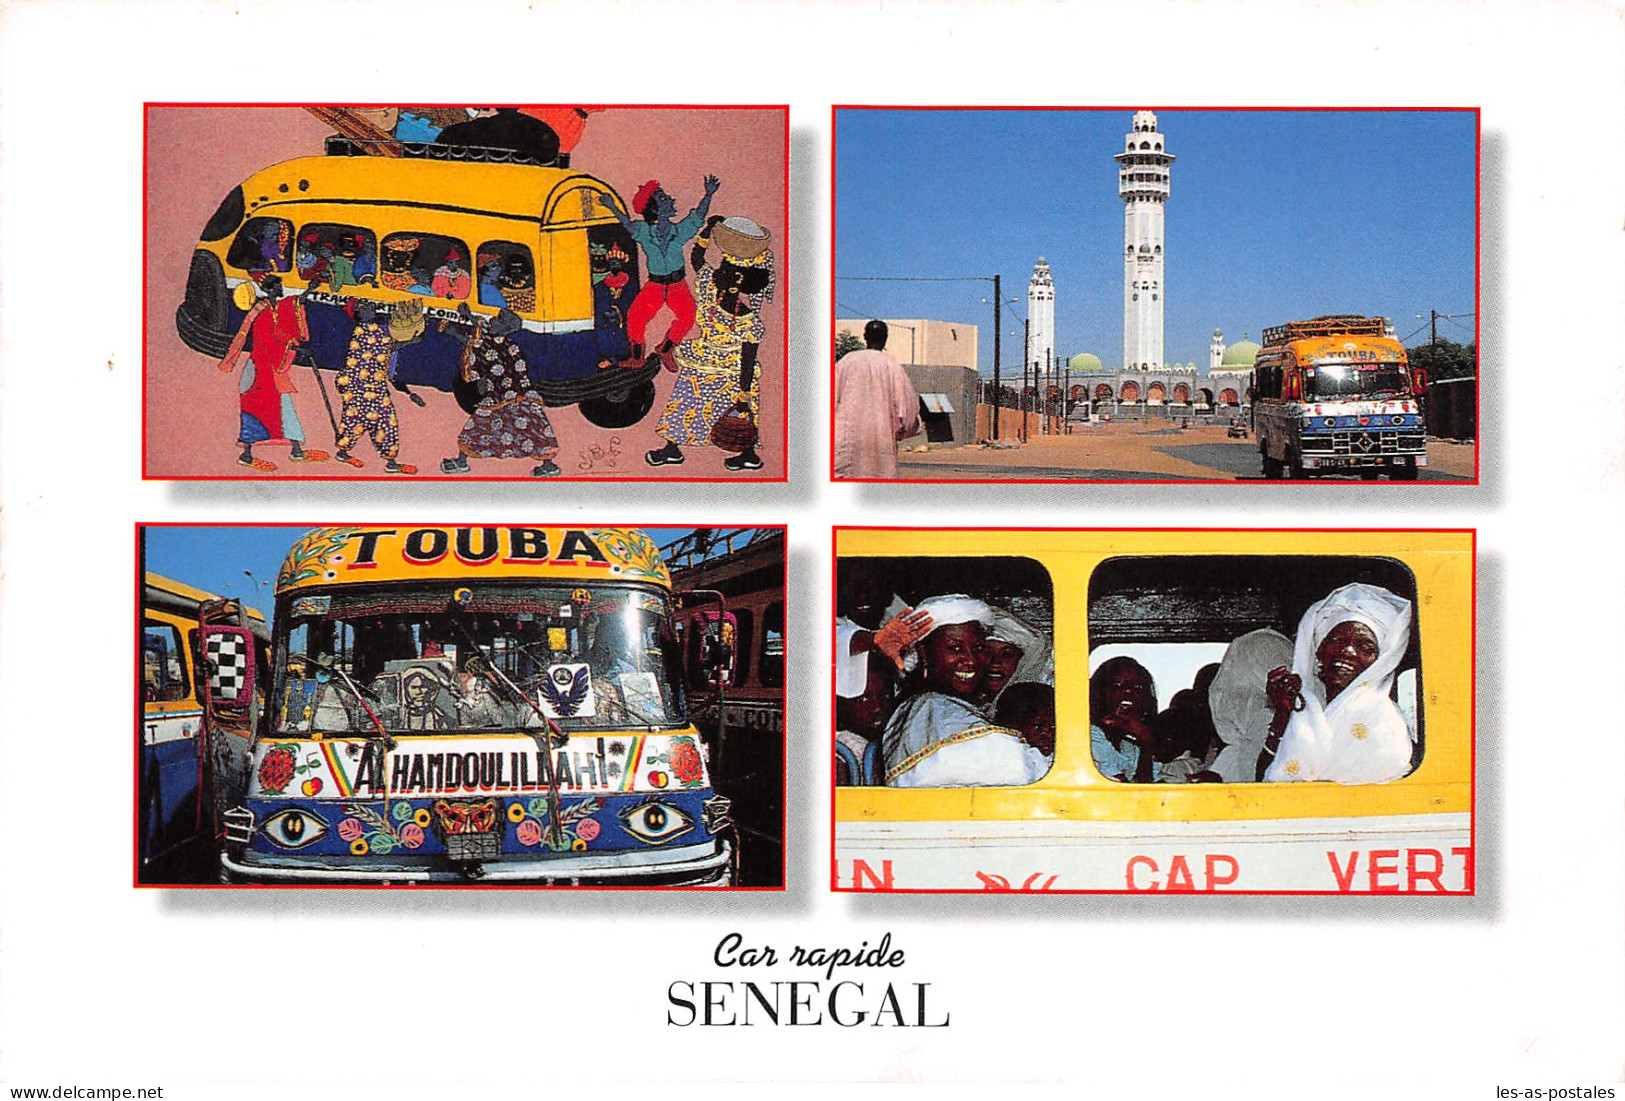 SENEGAL CAR RAPIDE - Sénégal